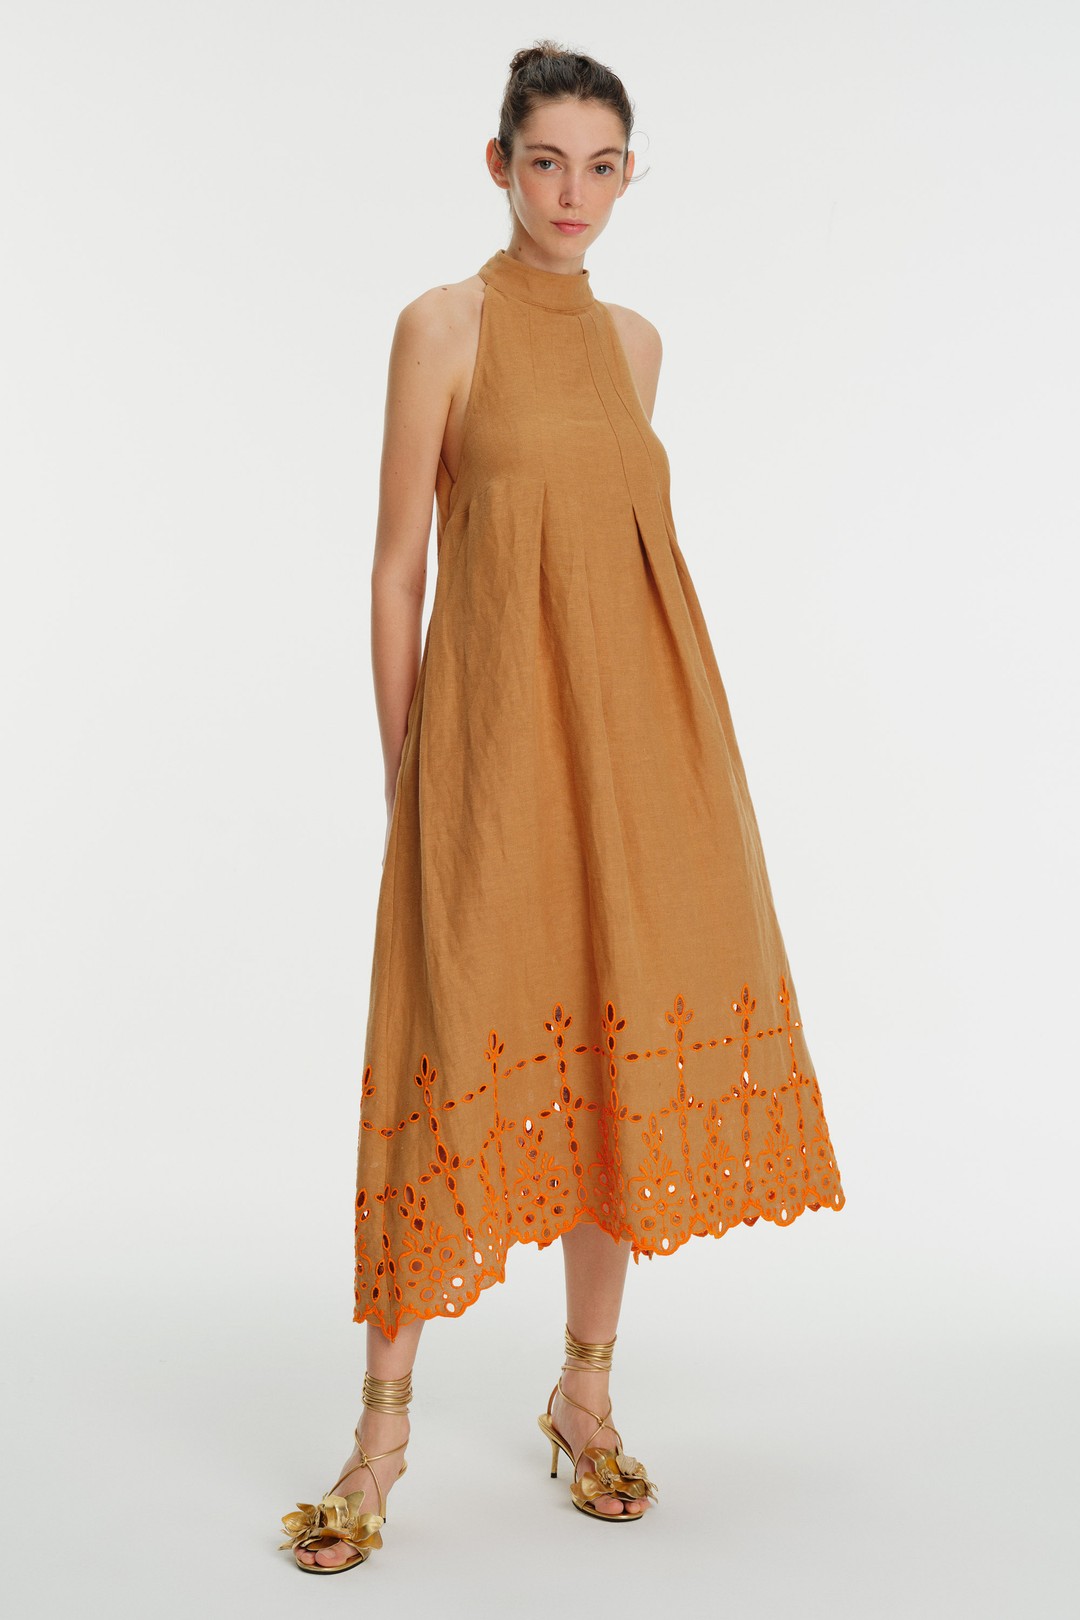 Backless Halter Neck Embroidered Linen Dress 1